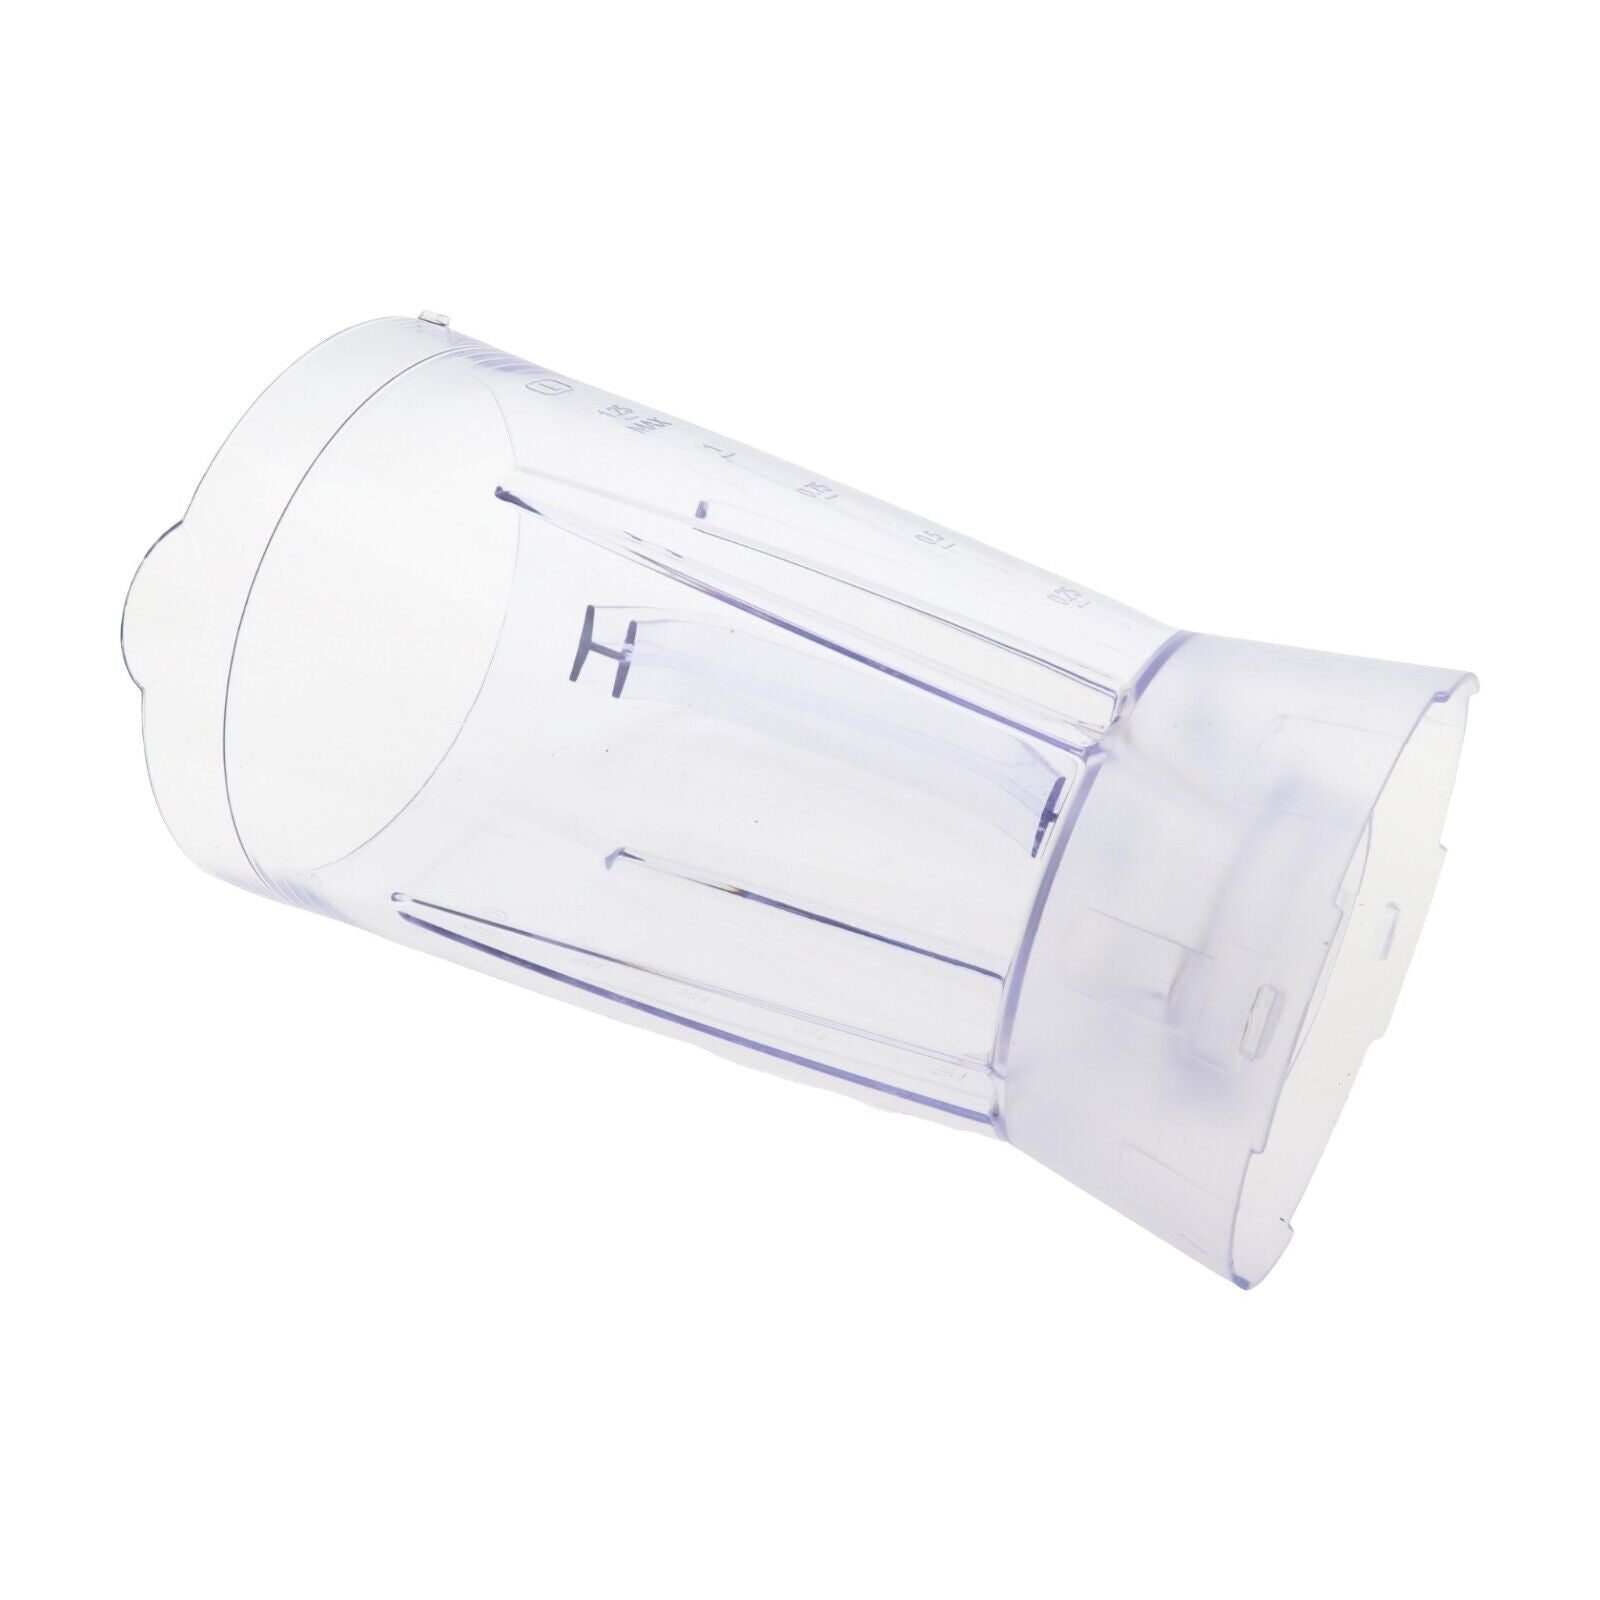 Moulinex Tefal plastic jug blender Blendeo+ BL2C LM2C NO LAMA – PGService